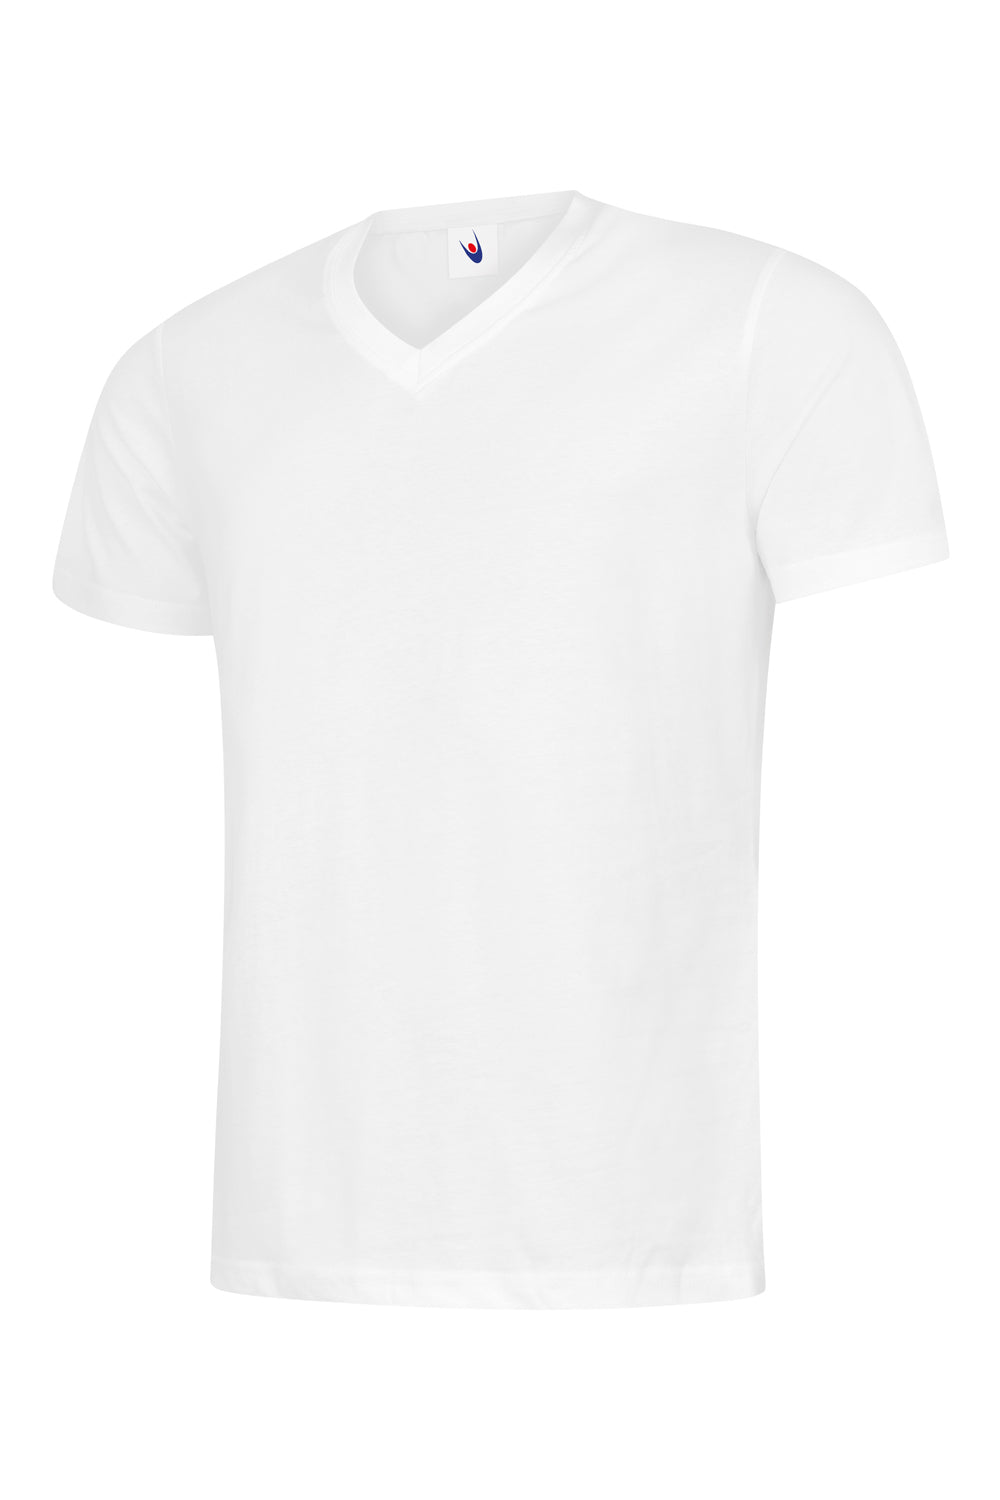 classic_v_neck_t-shirt_white